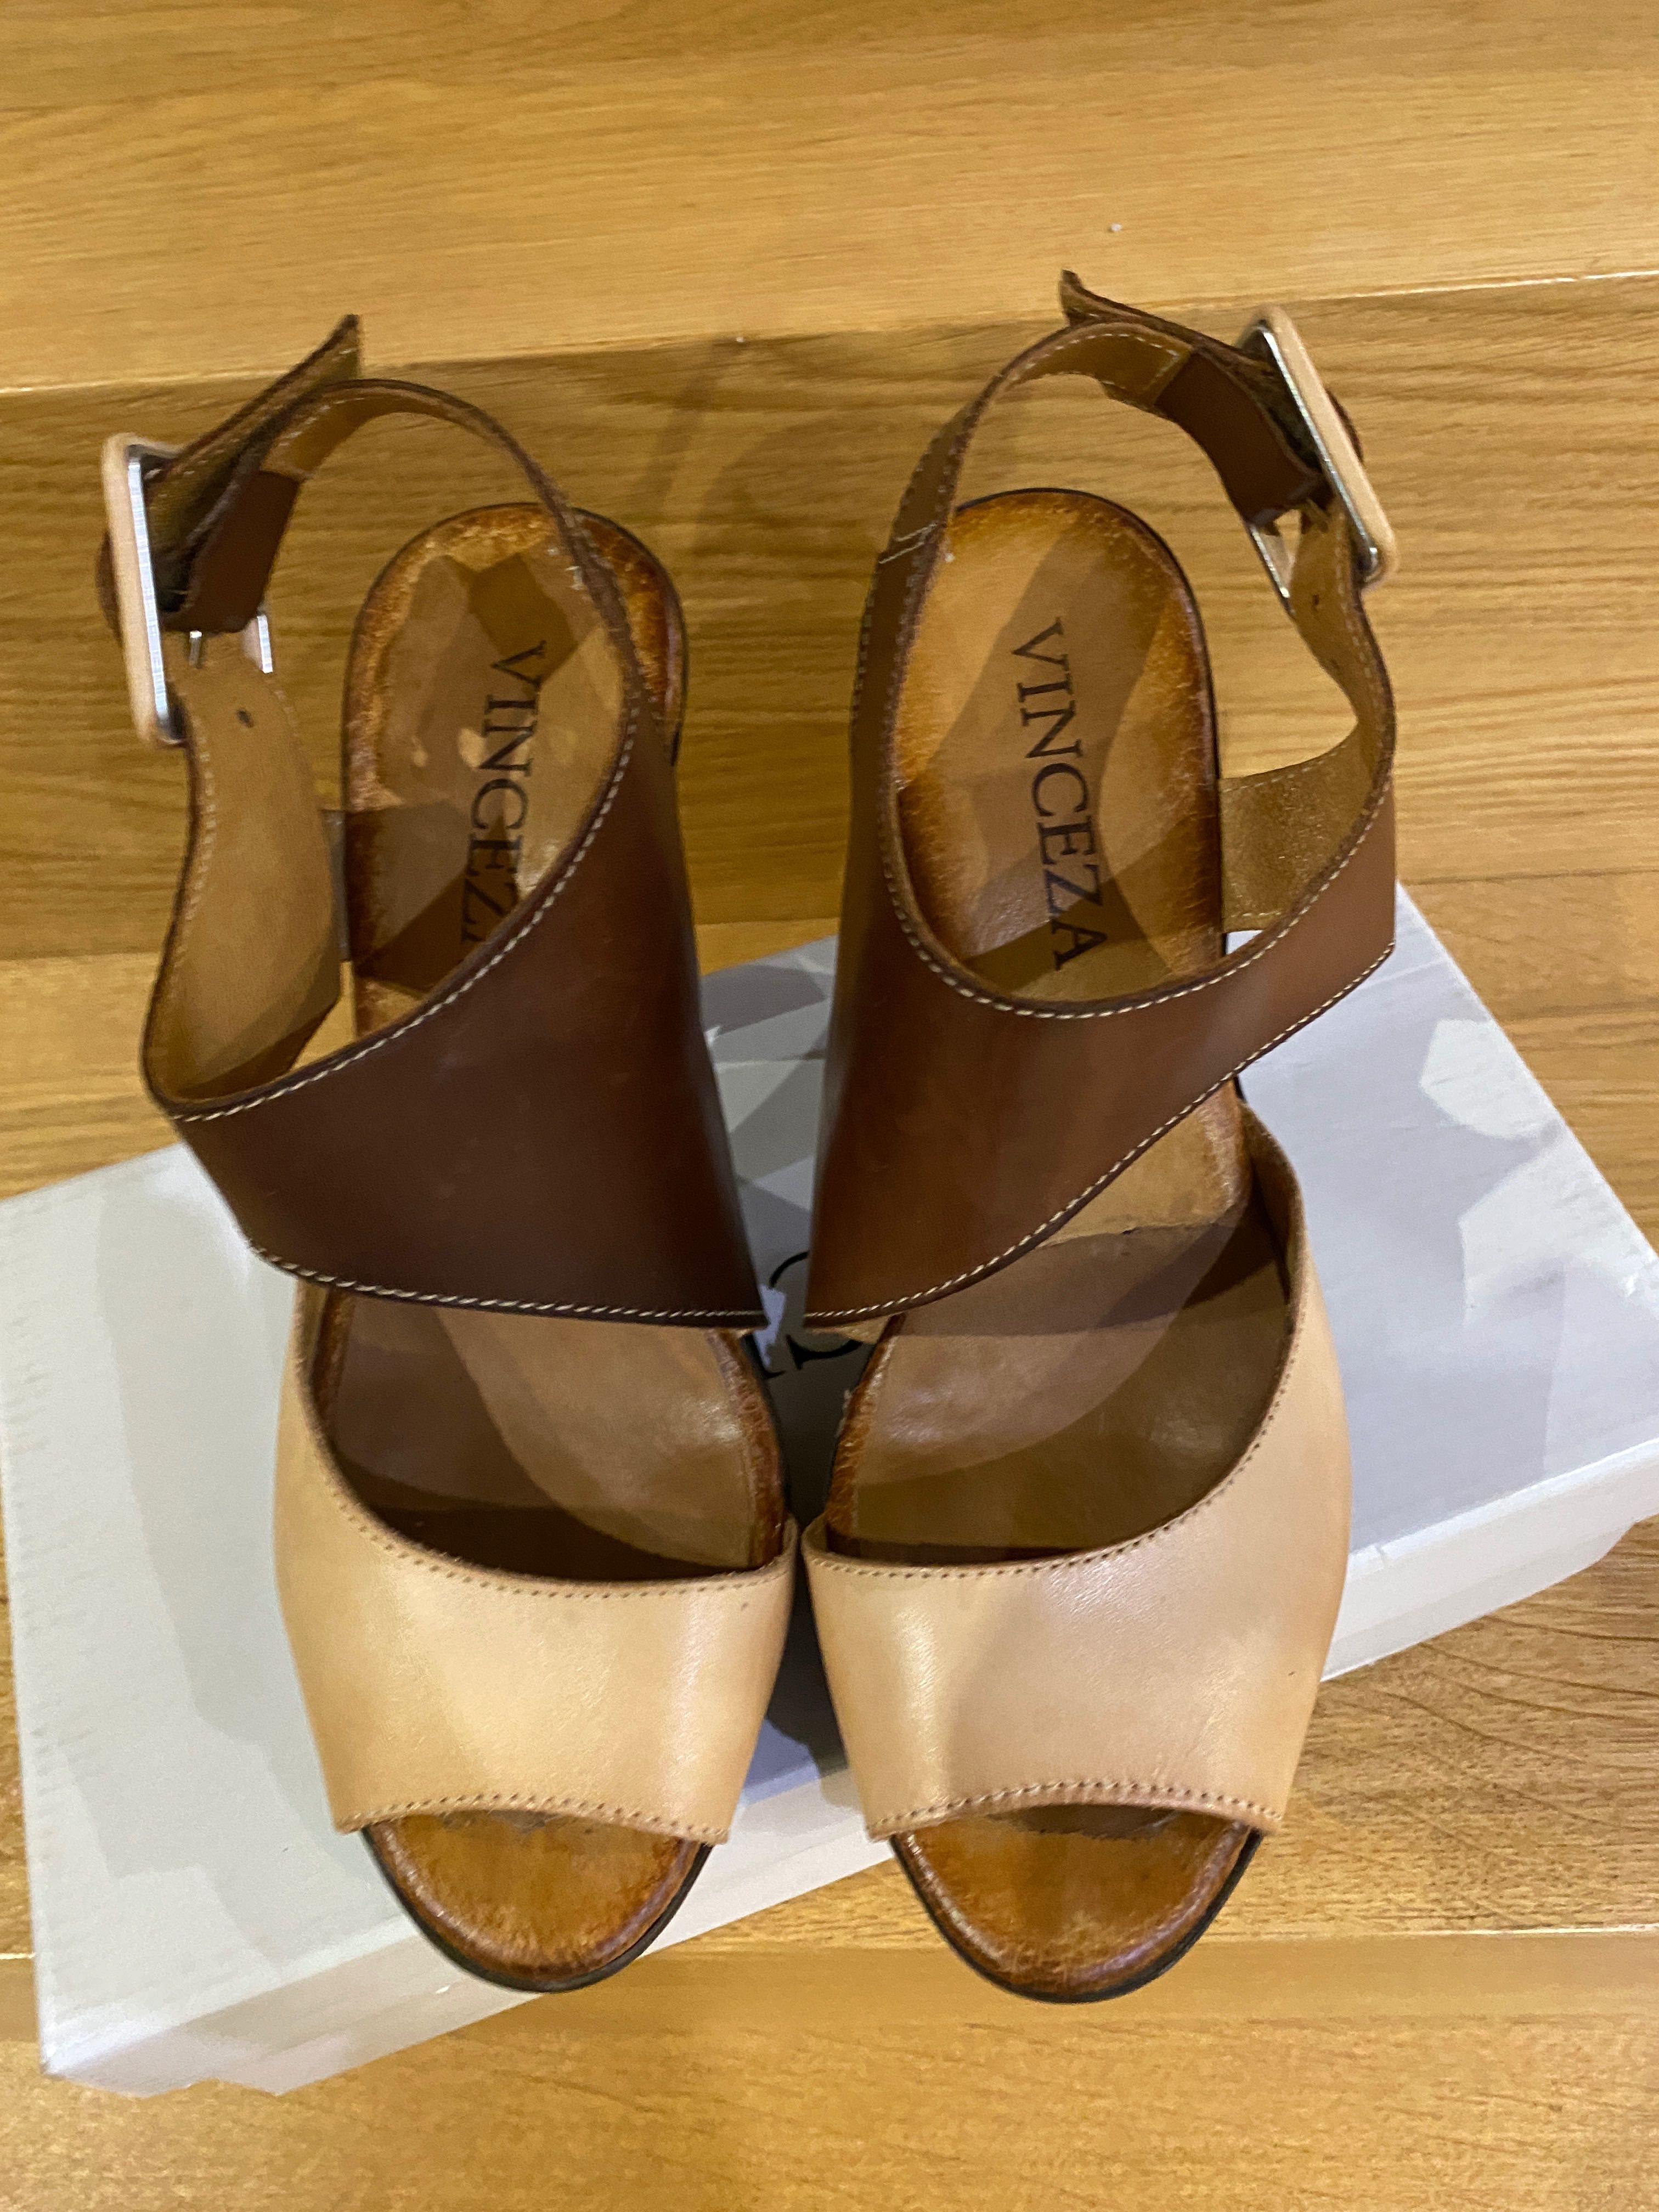 Śliczne i eleganckie brązowe sandały R.37 Skóra naturalna/wysoki obcas